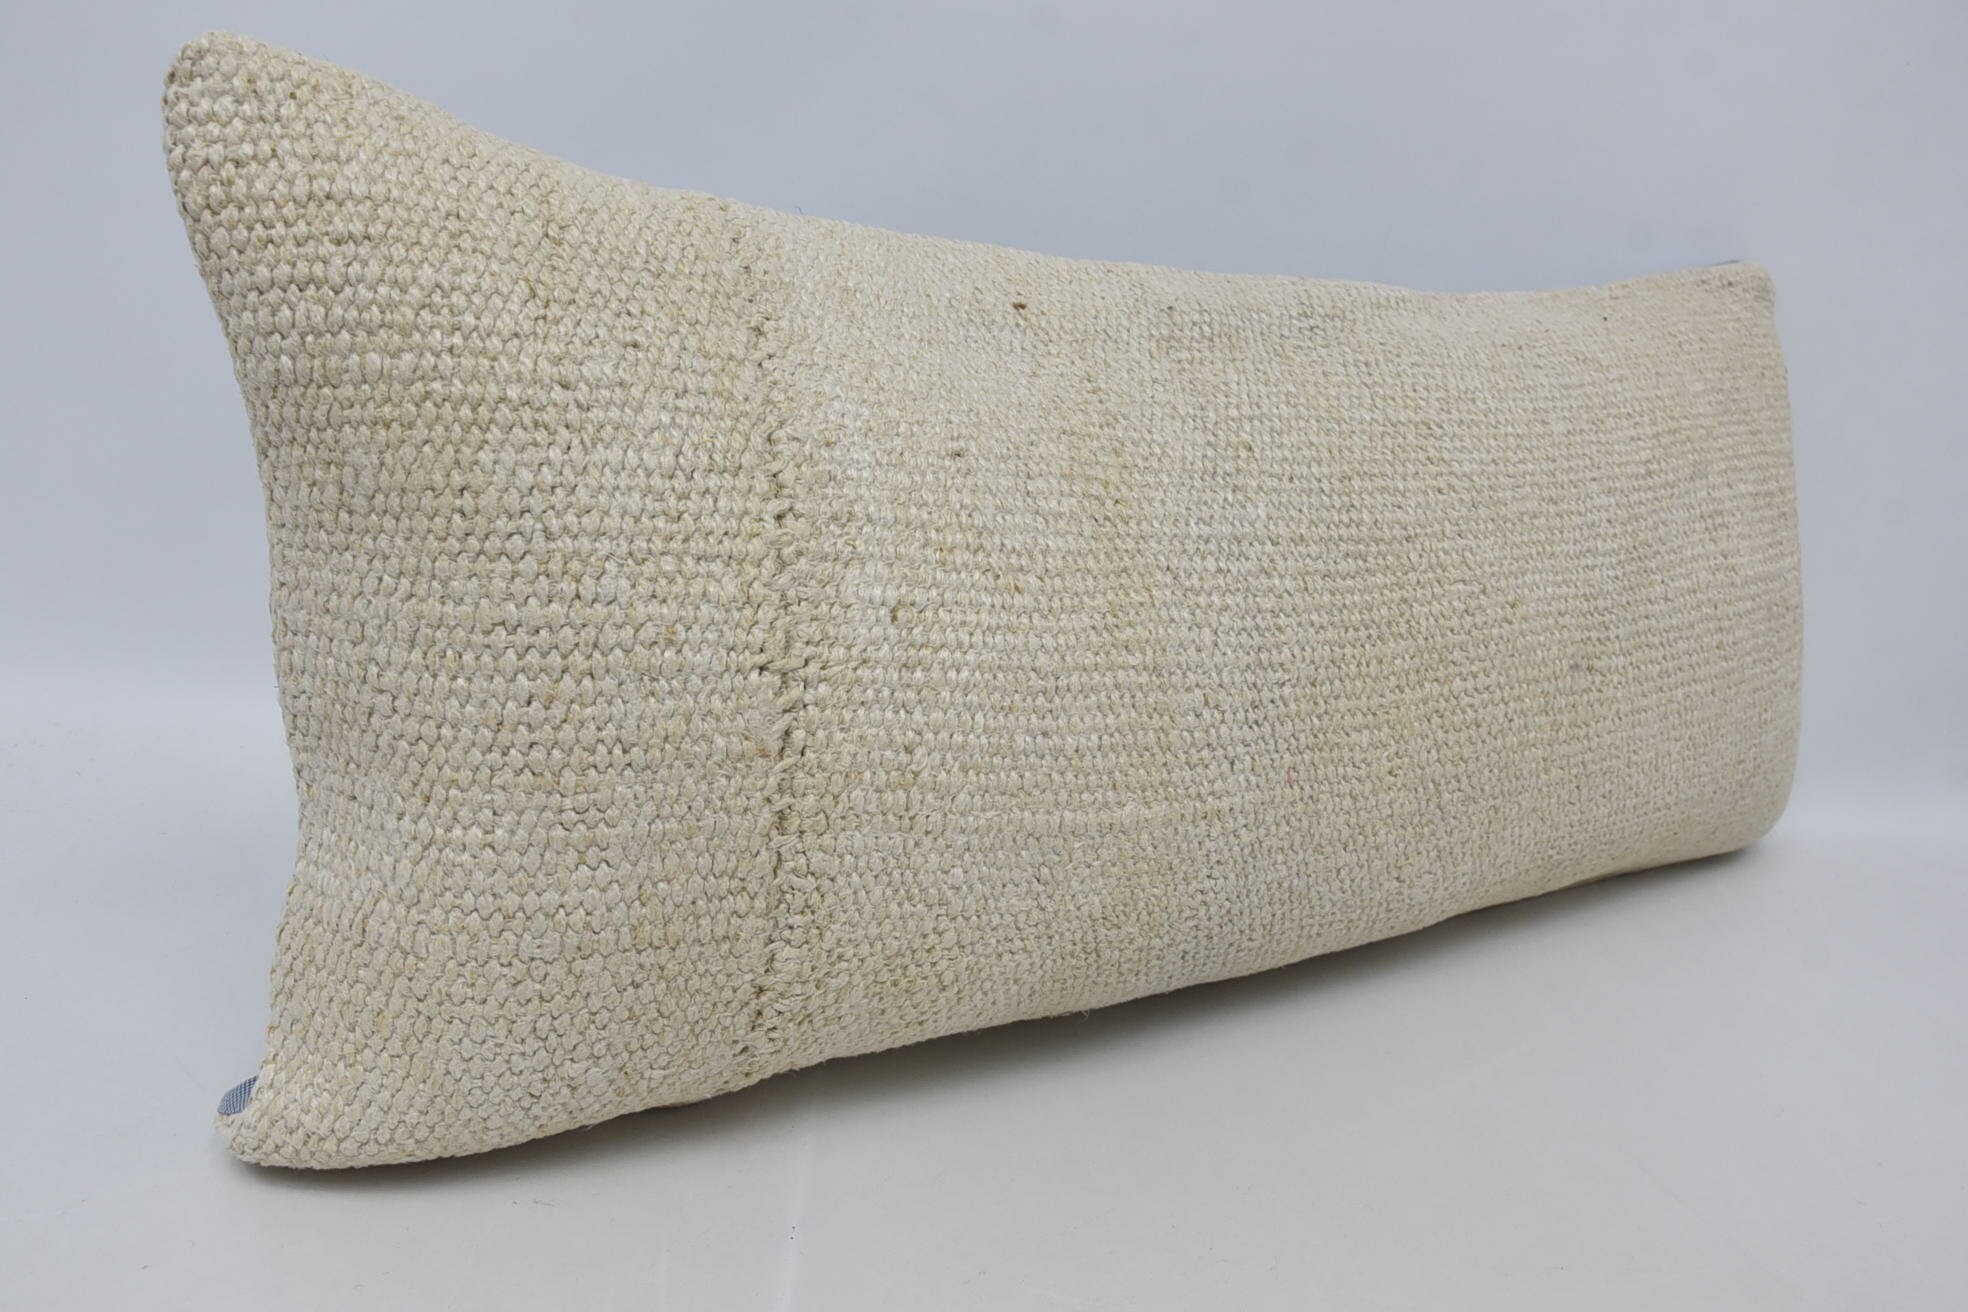 Home Decor Pillow, Crochet Pattern Cushion, 16"x36" White Cushion Cover, Handmade Kilim Cushion, Kilim Pillow Cover